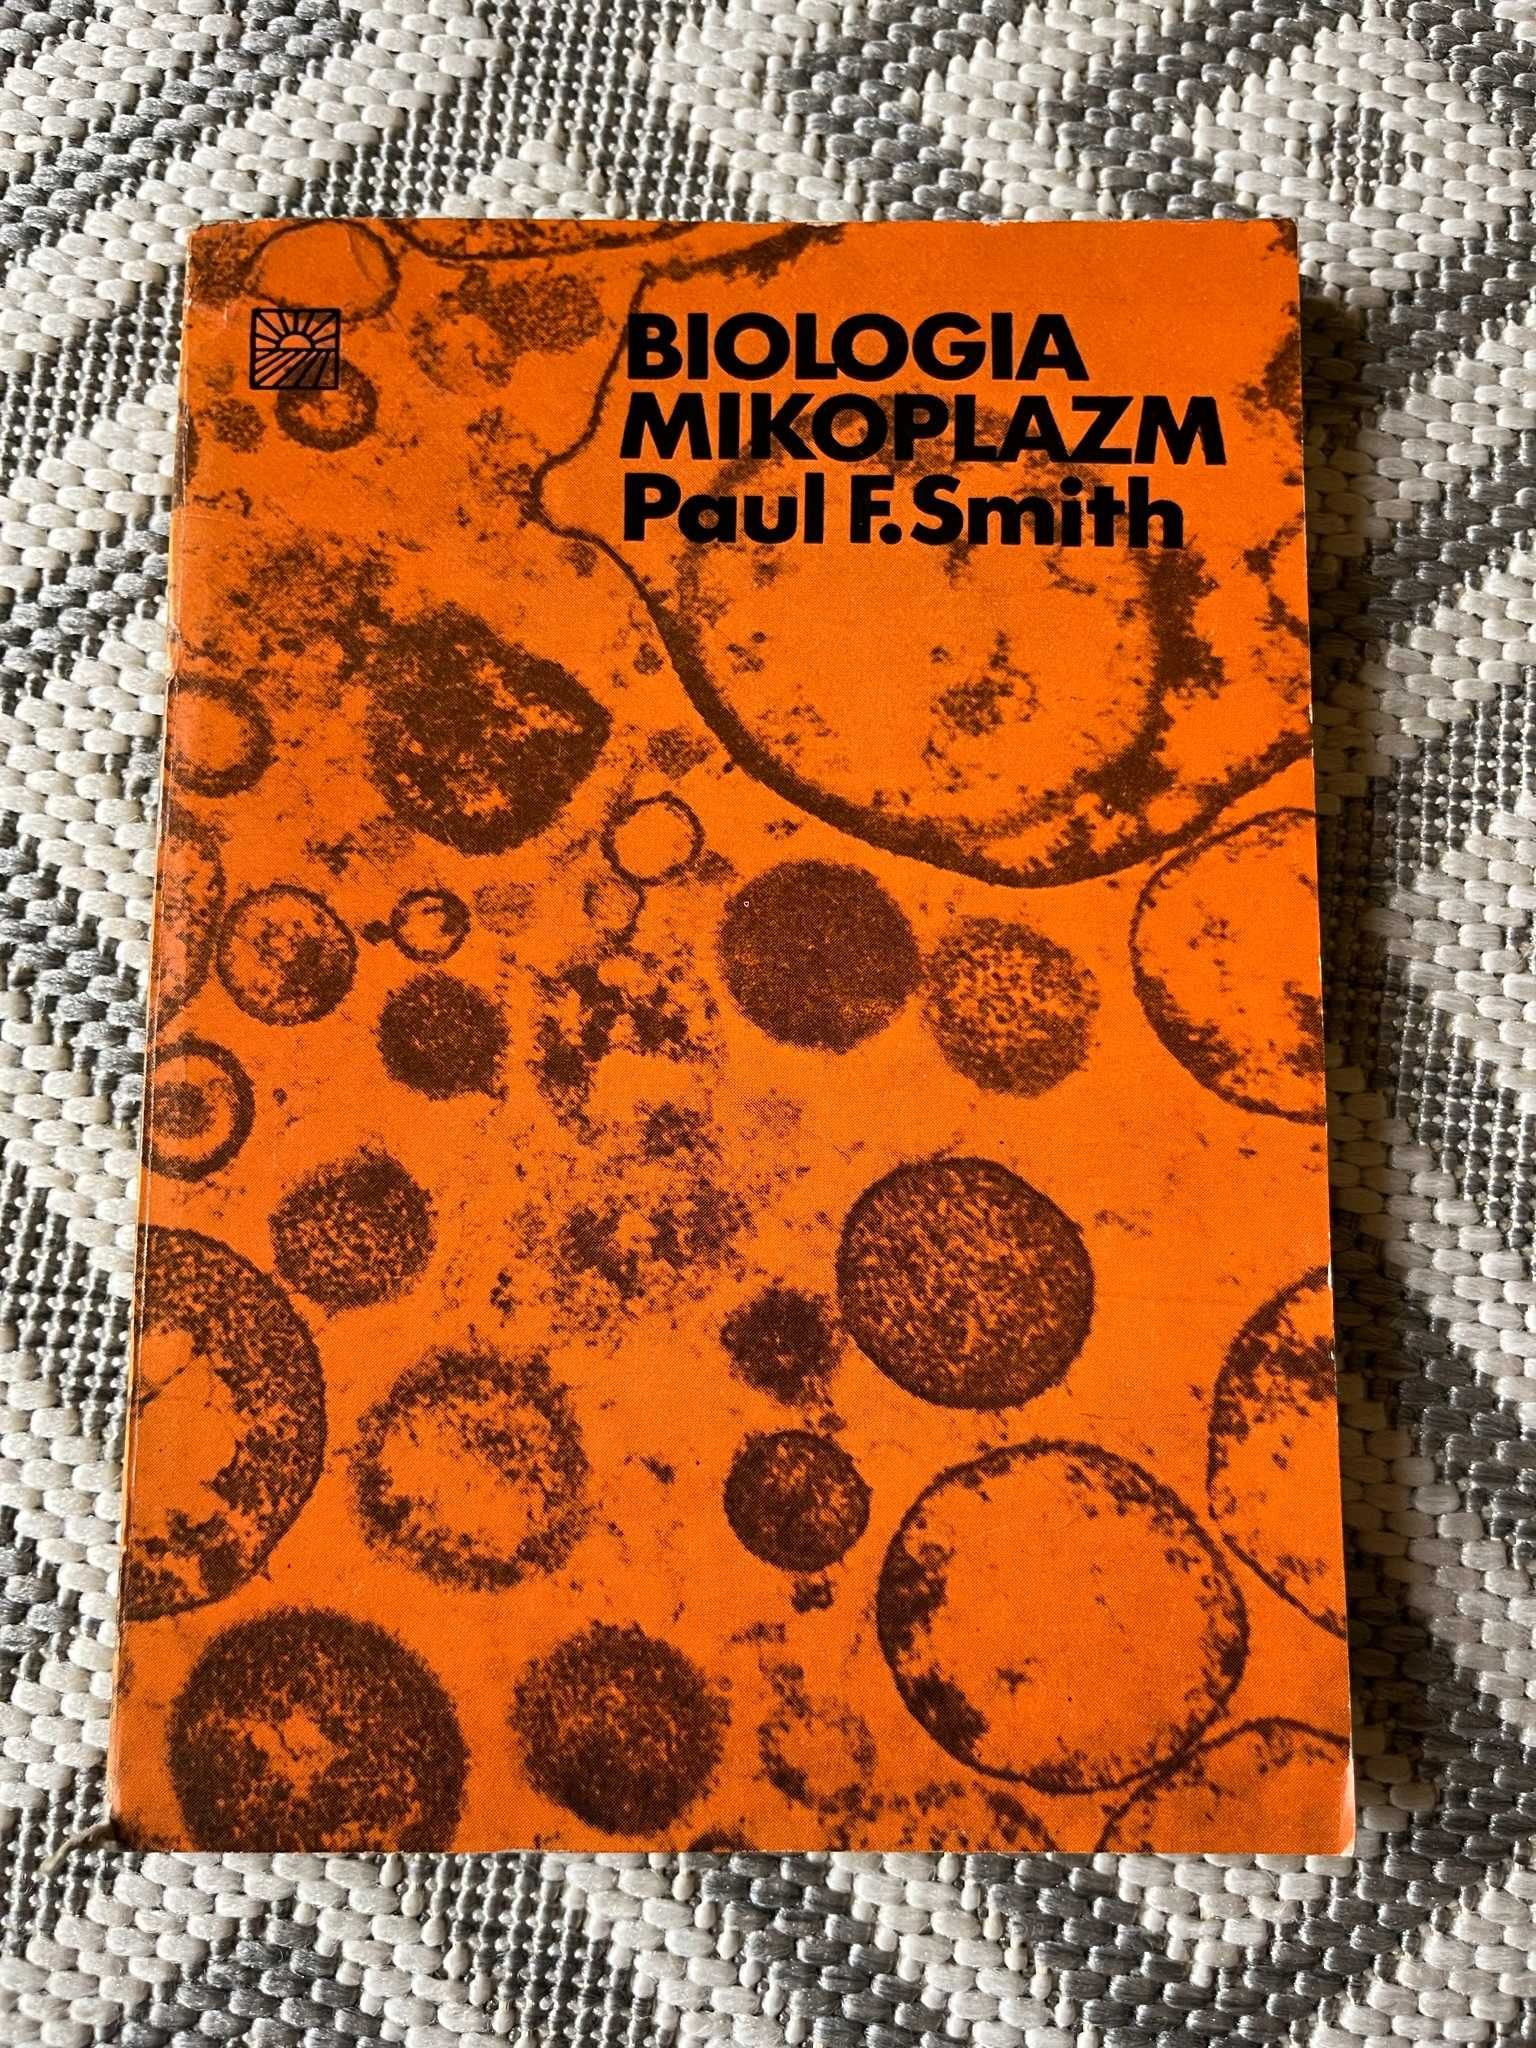 Paul F. Smith "Biologia mikroplazm"